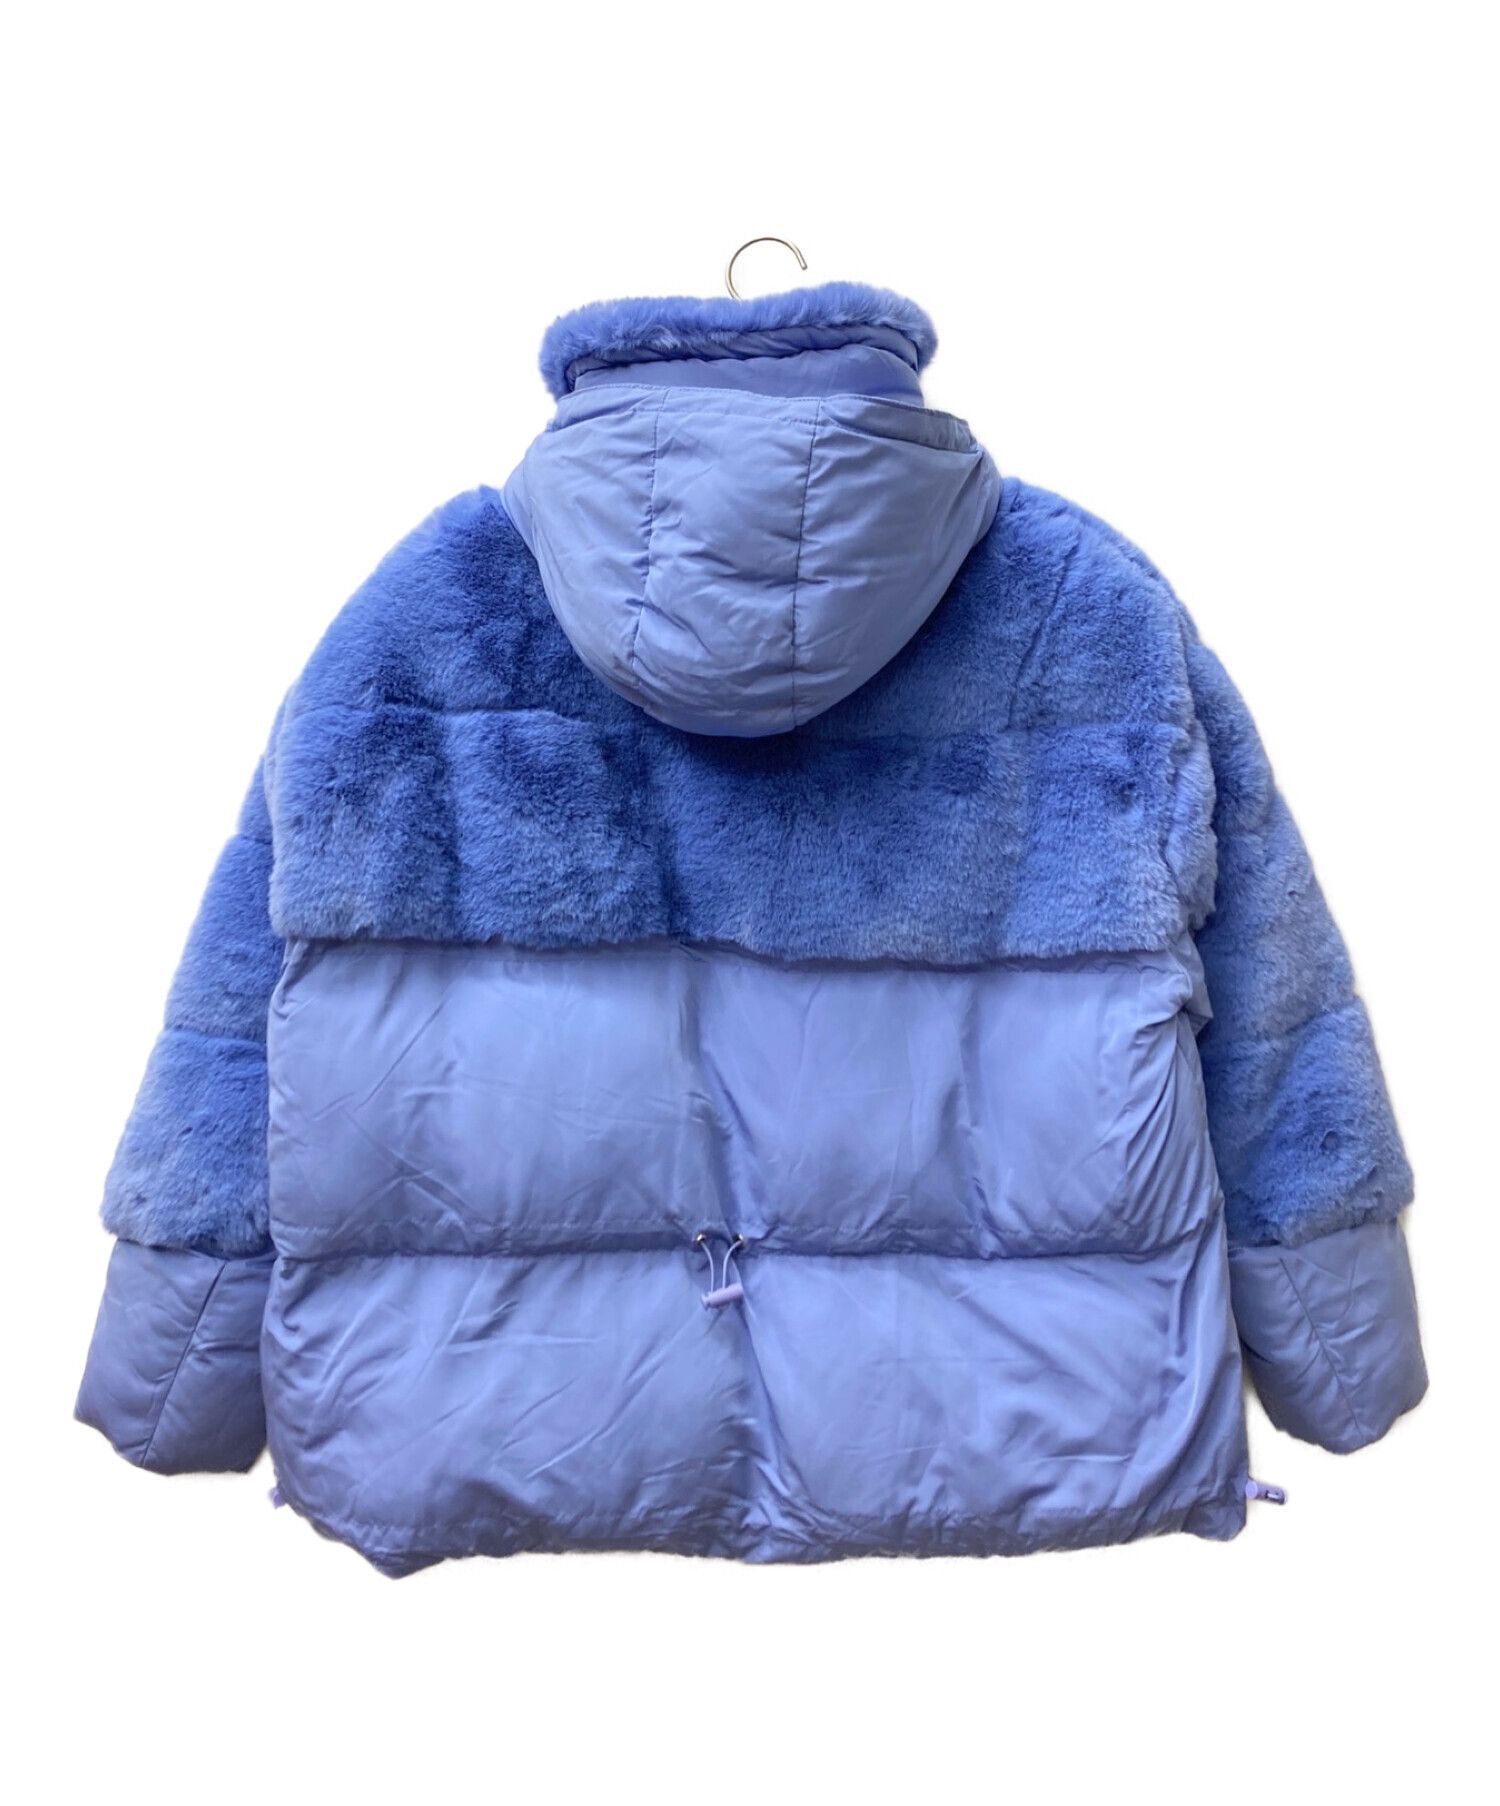 VEGANCODE (ヴィーガンコーデ) 異素材ミックスジャケットコート ネイビー サイズ:4